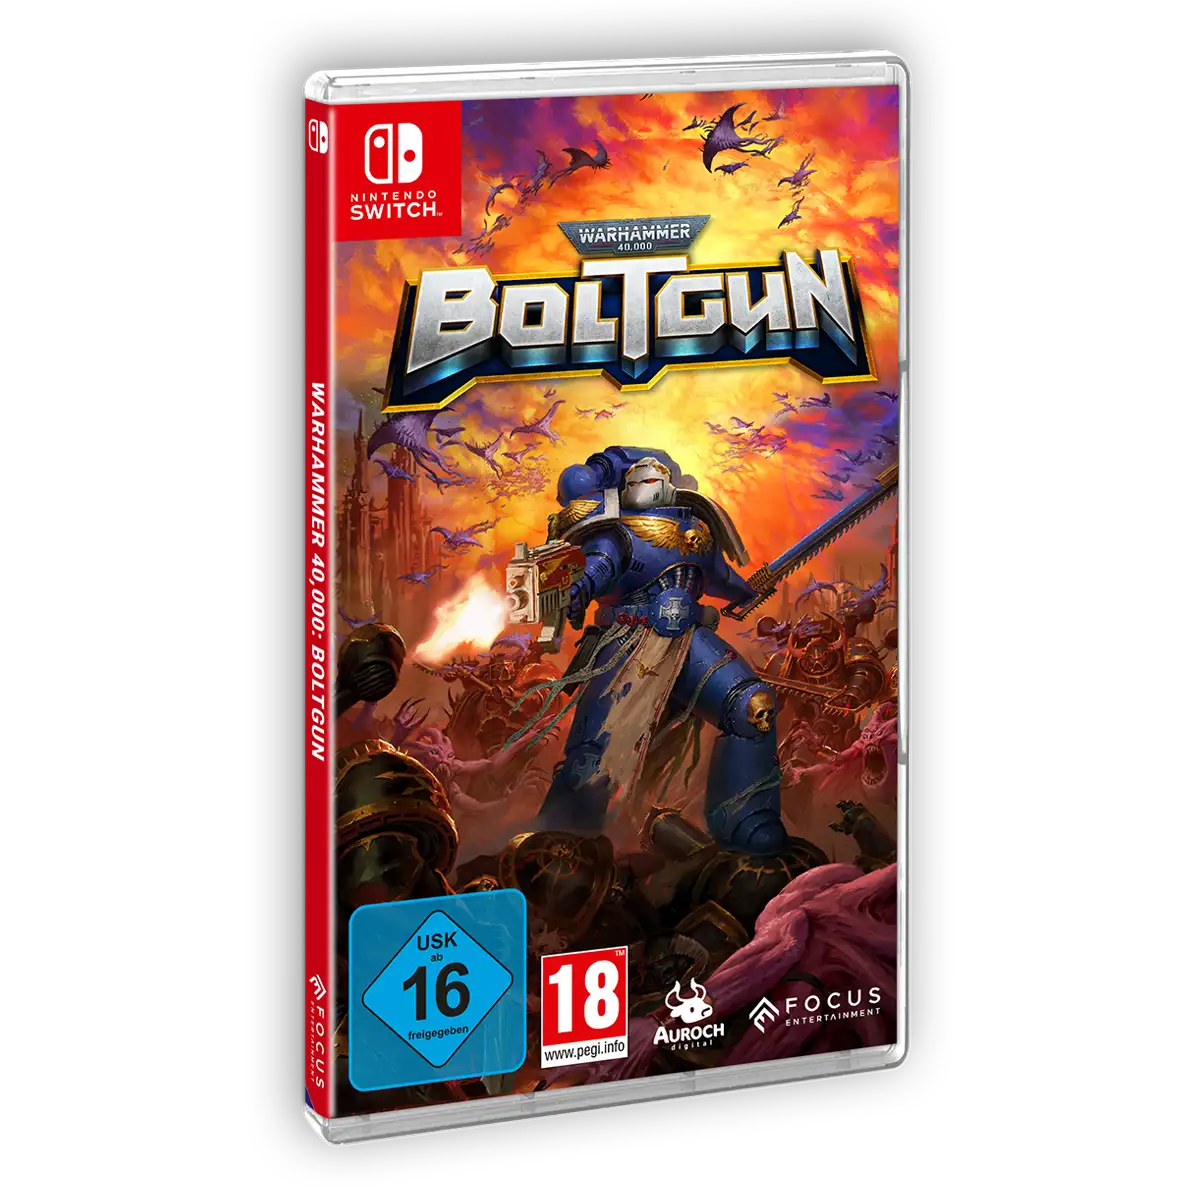 Warhammer 40.000: Boltgun (Switch) Image 2